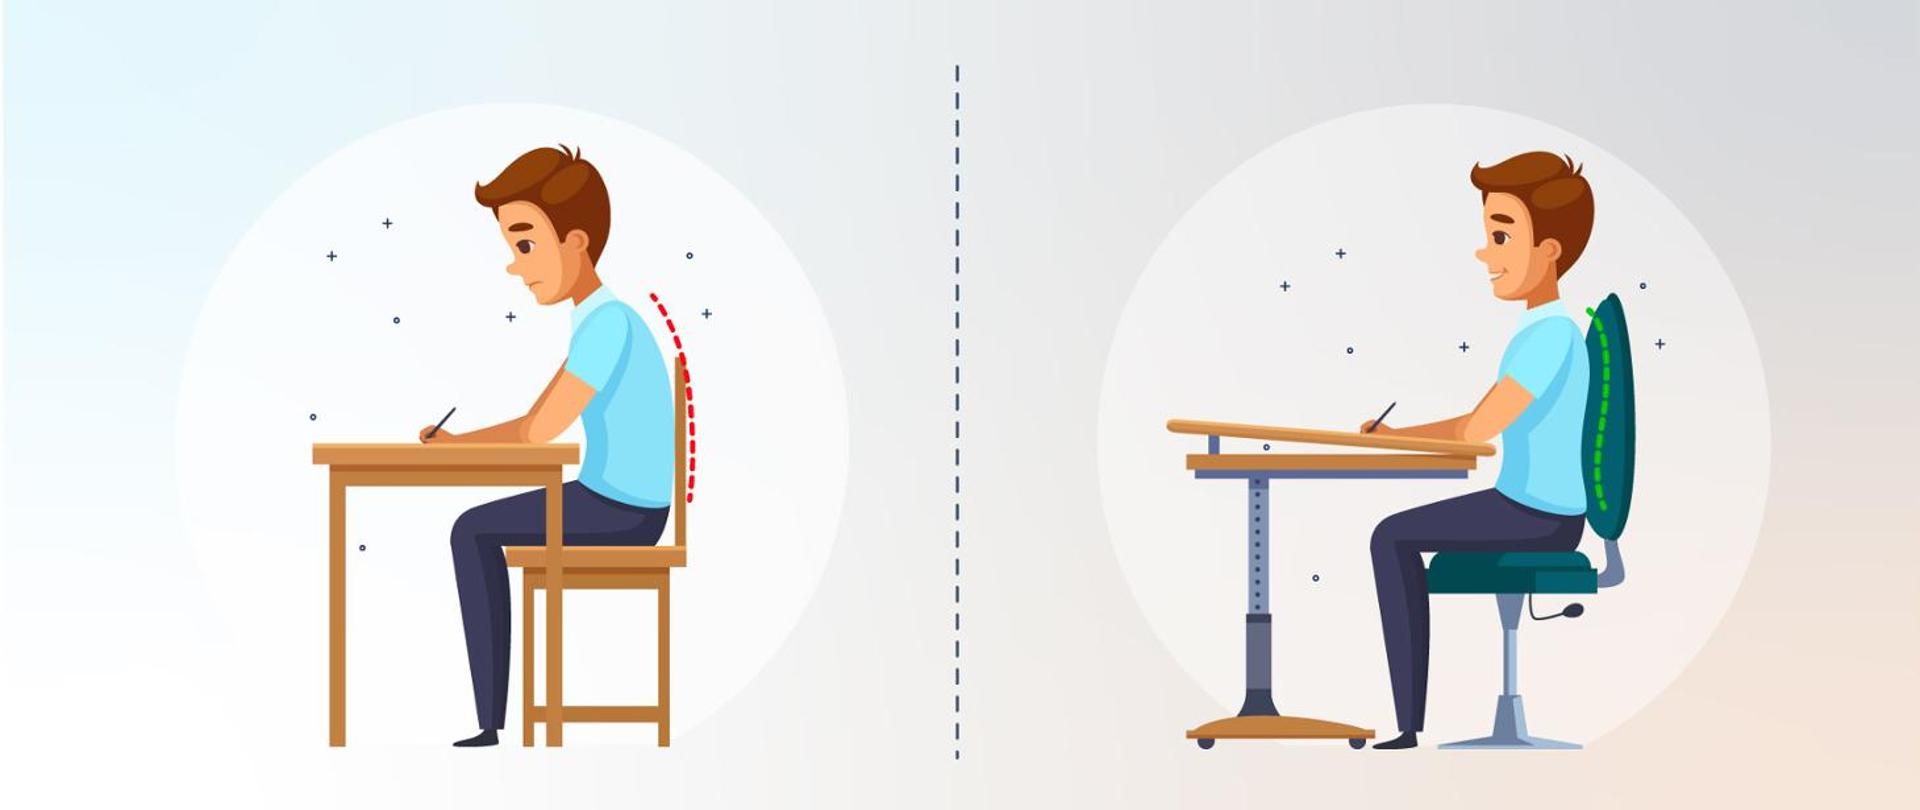 Obrazek podzielony jest na dwie części. Każda przedstawia siedzącego na krześle przy stoliku chłopca. Po prawej stronie postawa chłopca jest prawidłowa, krzesło i stolik są regulowane. Po lewej stronie chłopiec jest zgarbiony, krzesło i stolik nie są regulowane.